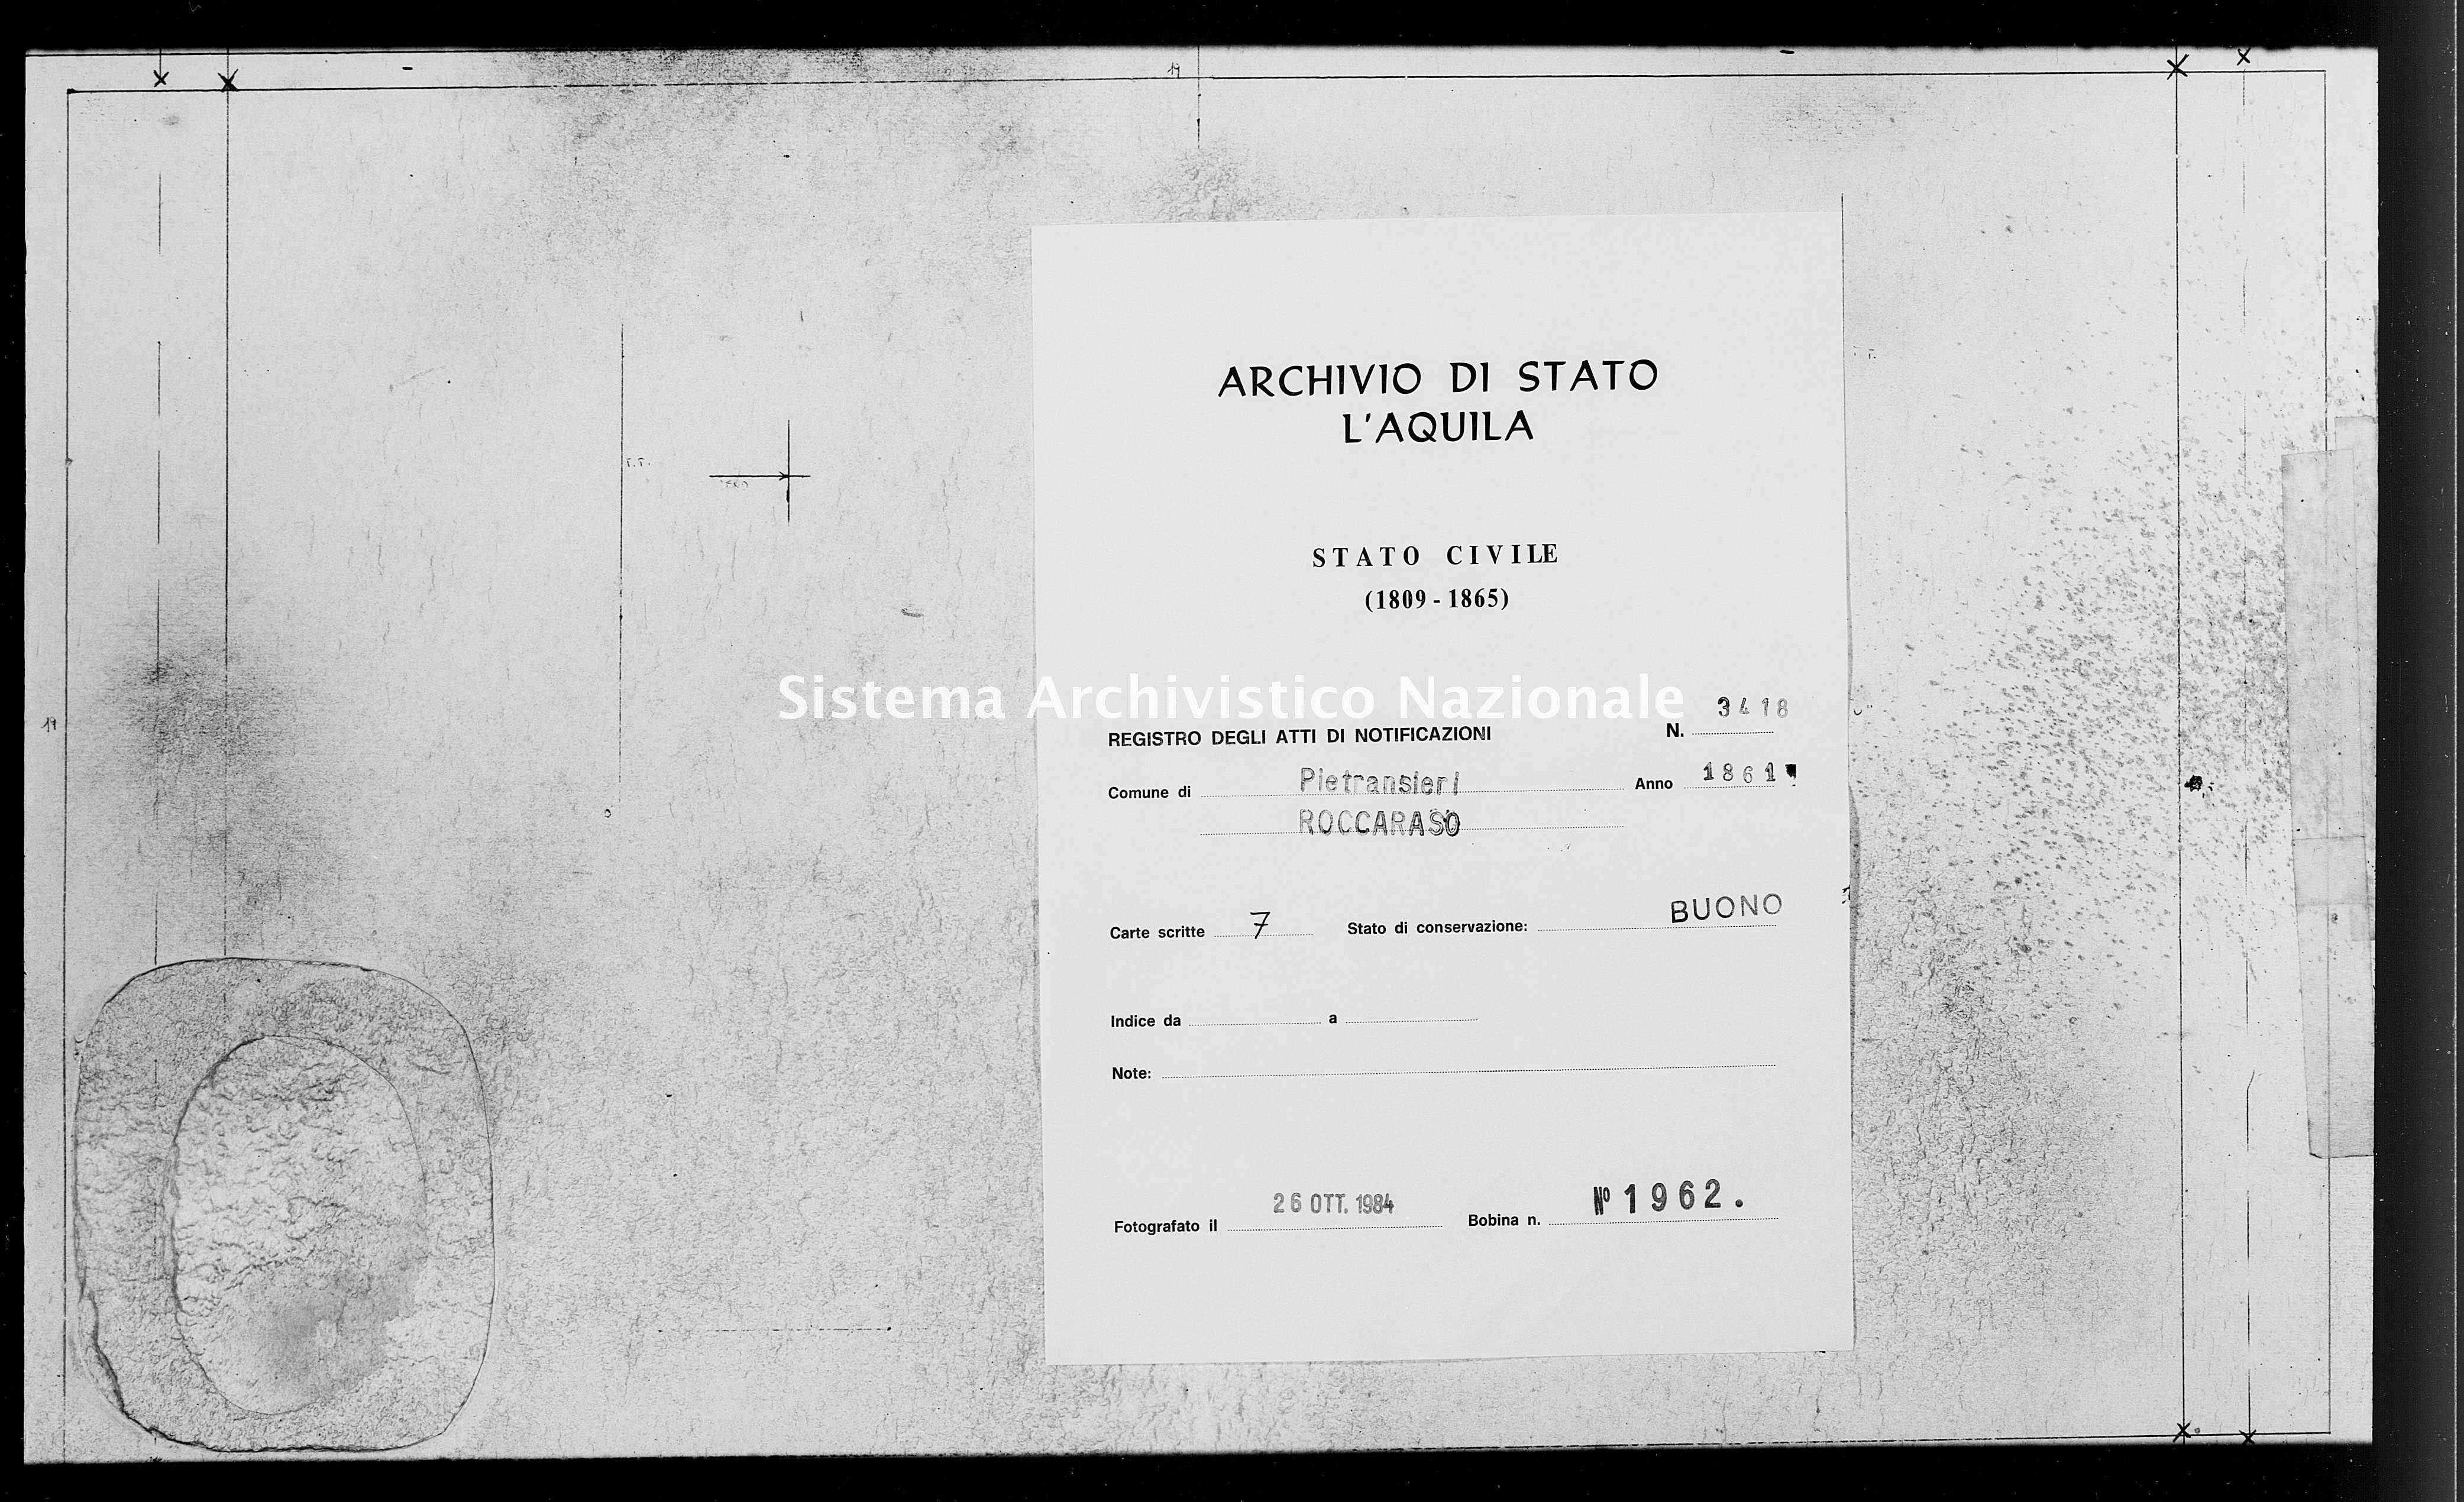 Archivio di stato di L'aquila - Stato civile italiano - Pietransieri - Matrimoni, memorandum notificazioni ed opposizioni - 1861 - 3418 -